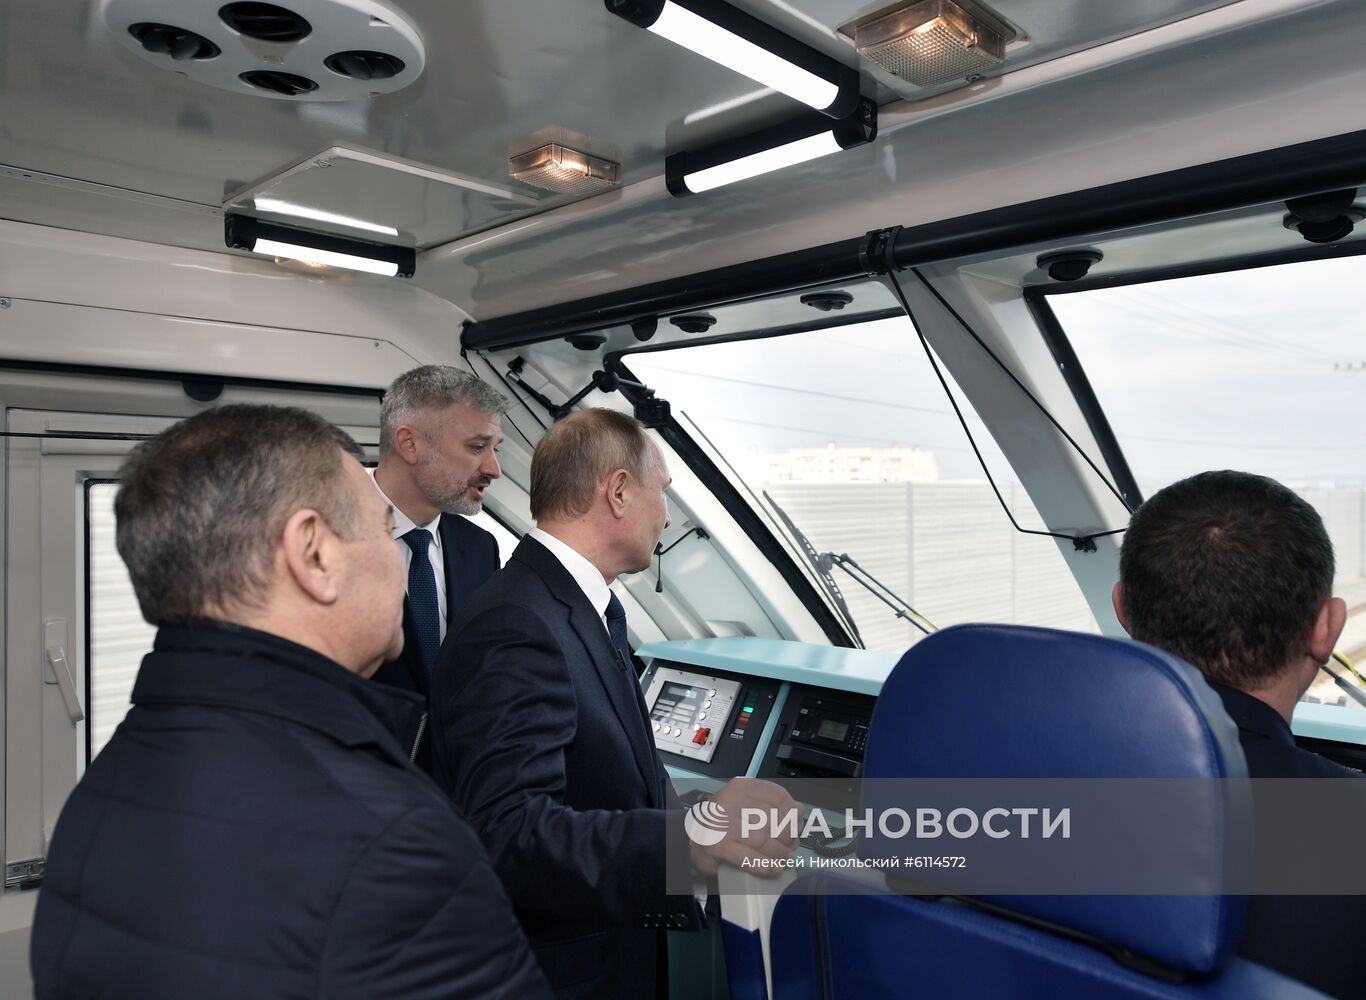 Президент РФ В. Путин открыл железнодорожное движение по Крымскому мосту